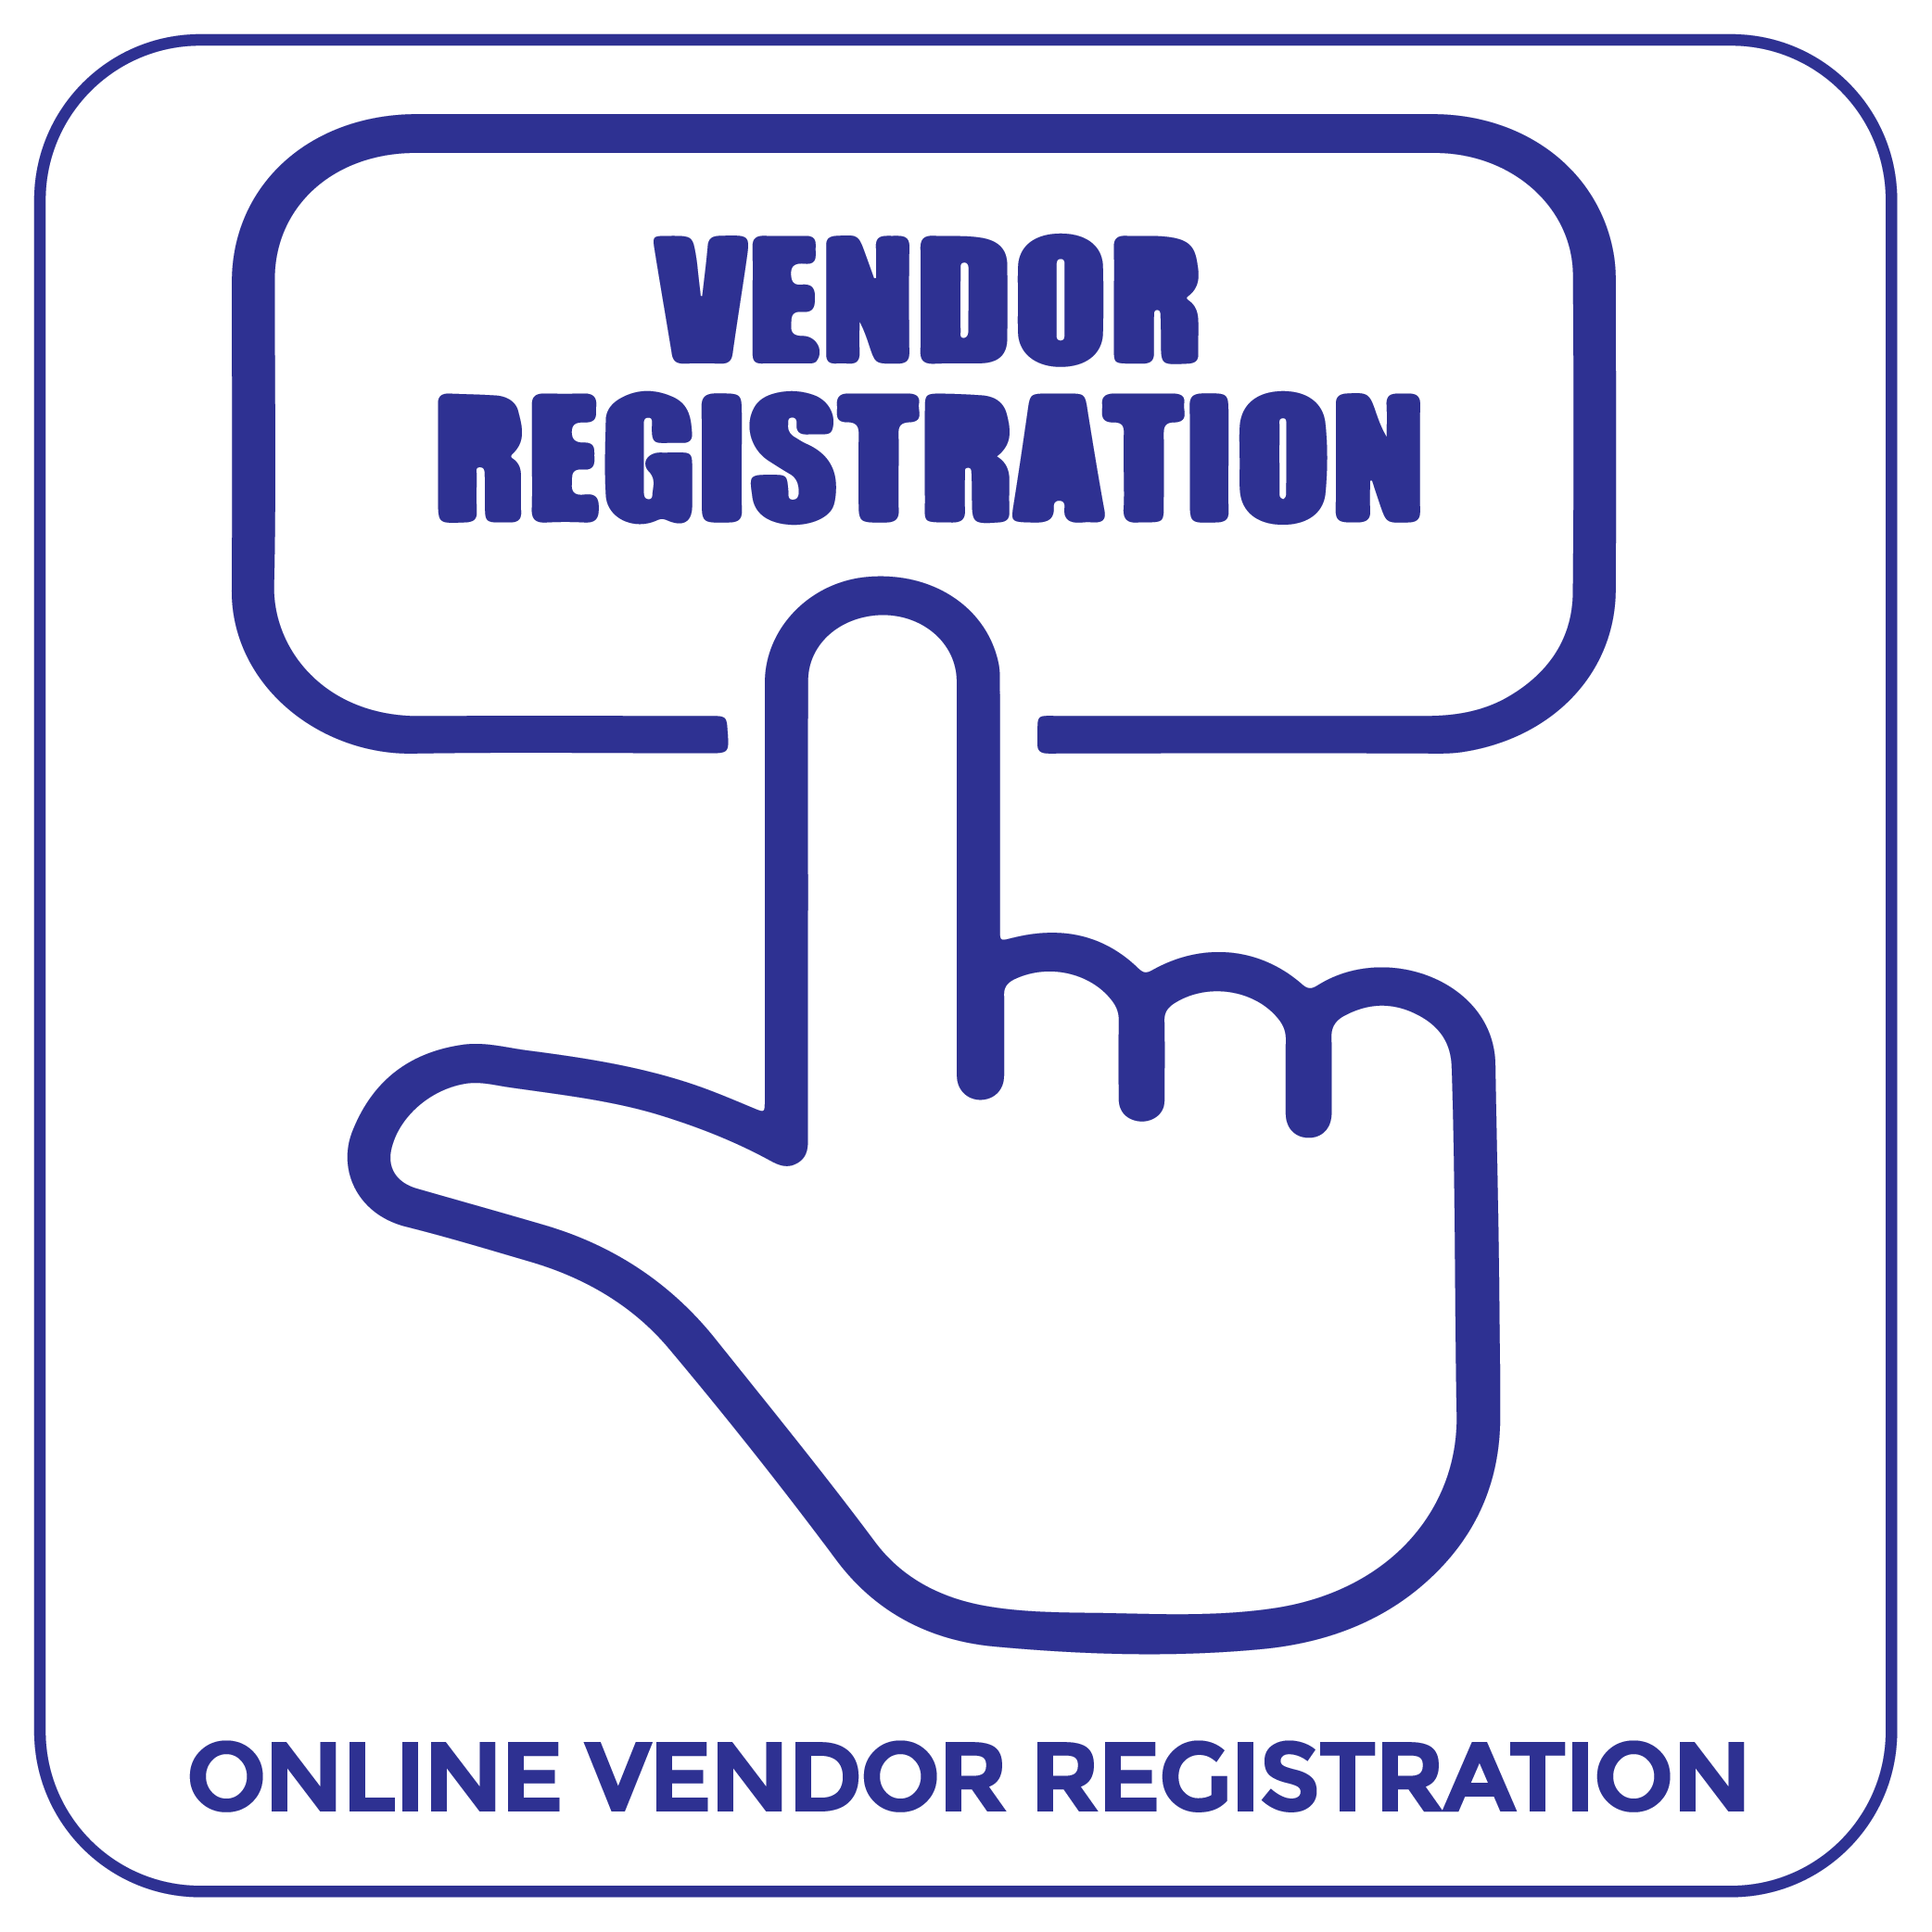 Online Vendor Registration